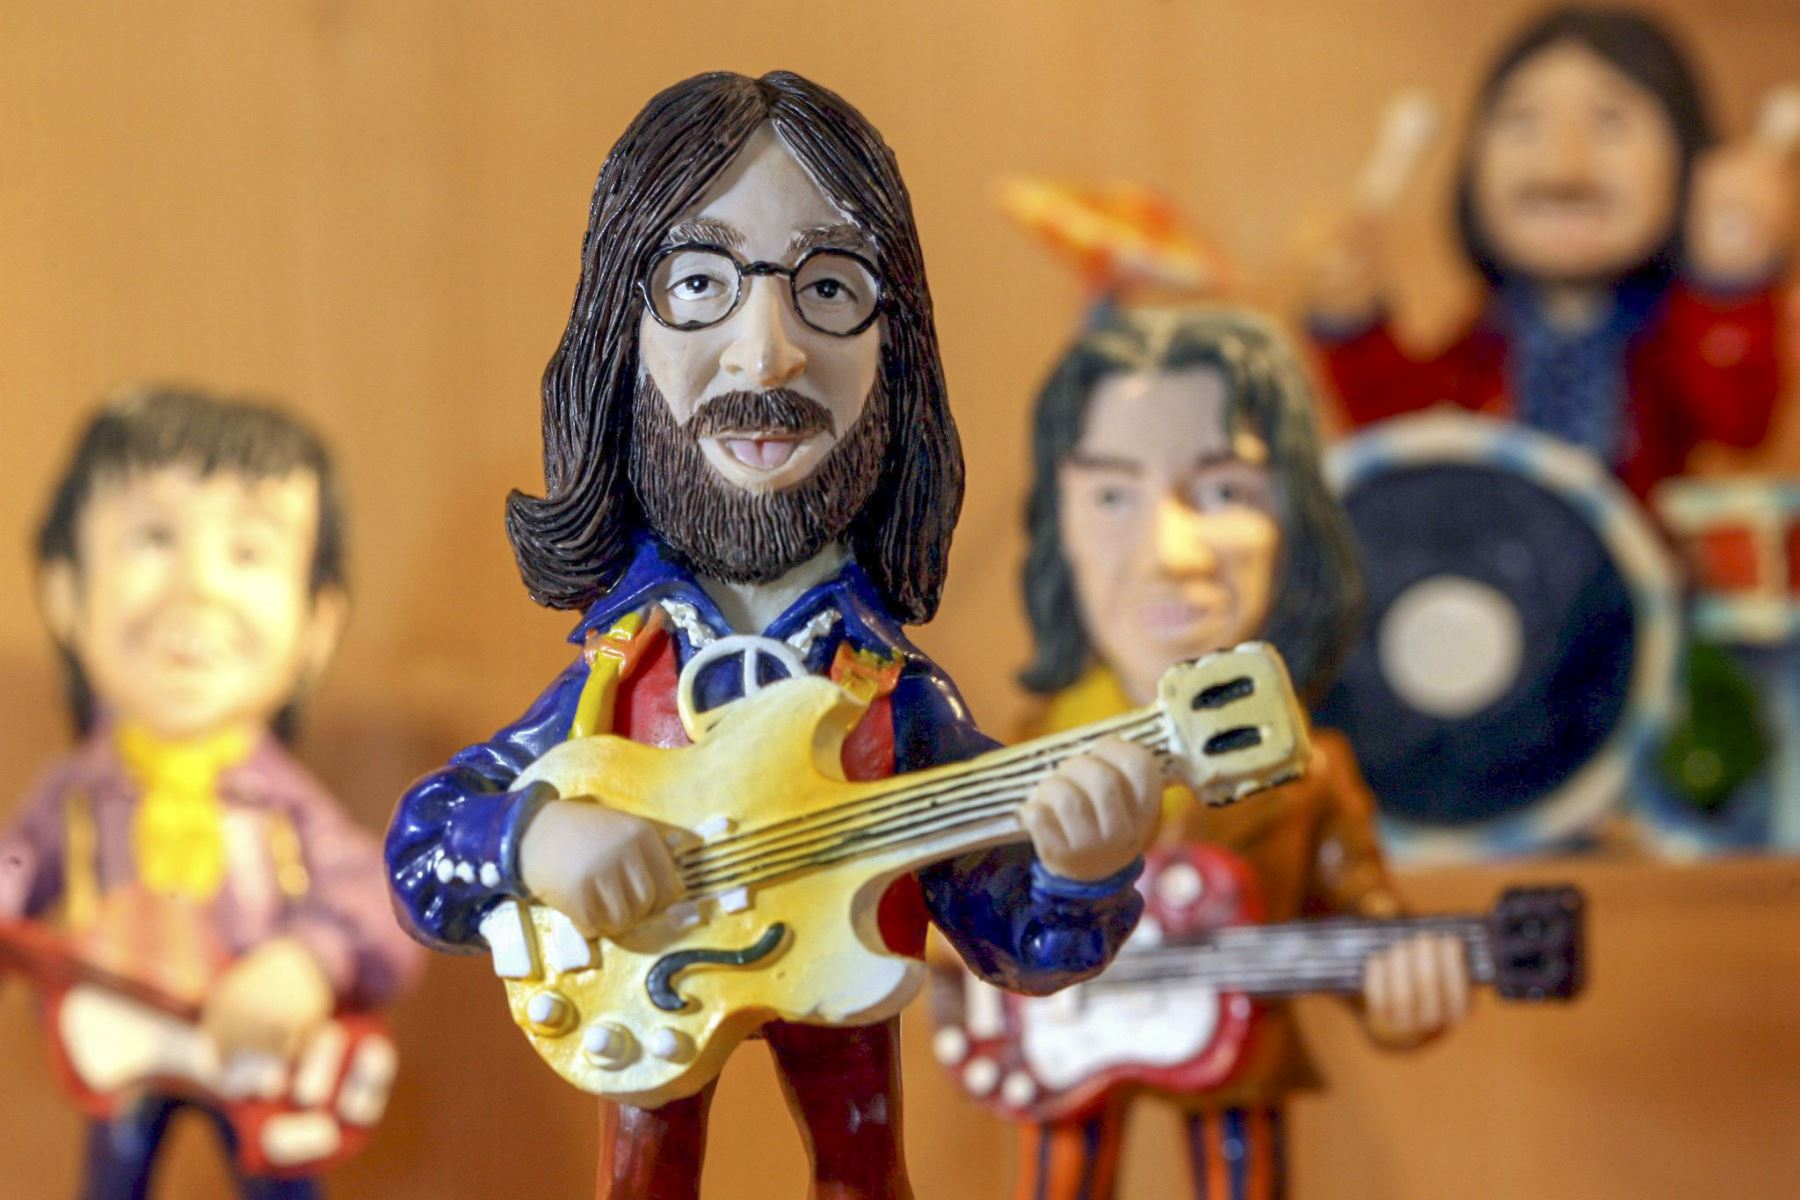 La figura de John Lennon, parte de una colección de figuras miniatura de los Beatles del fanático Juergen Moench, es una de las que se encuentran exhibidas en el museo de la ciudad de Eisenberg, Alemania. Cerca de 450 objetos de la colección de Moench sobre los Beatles, se encuentran en el museo hasta el 22 de enero 2006. 

Foto:EFE